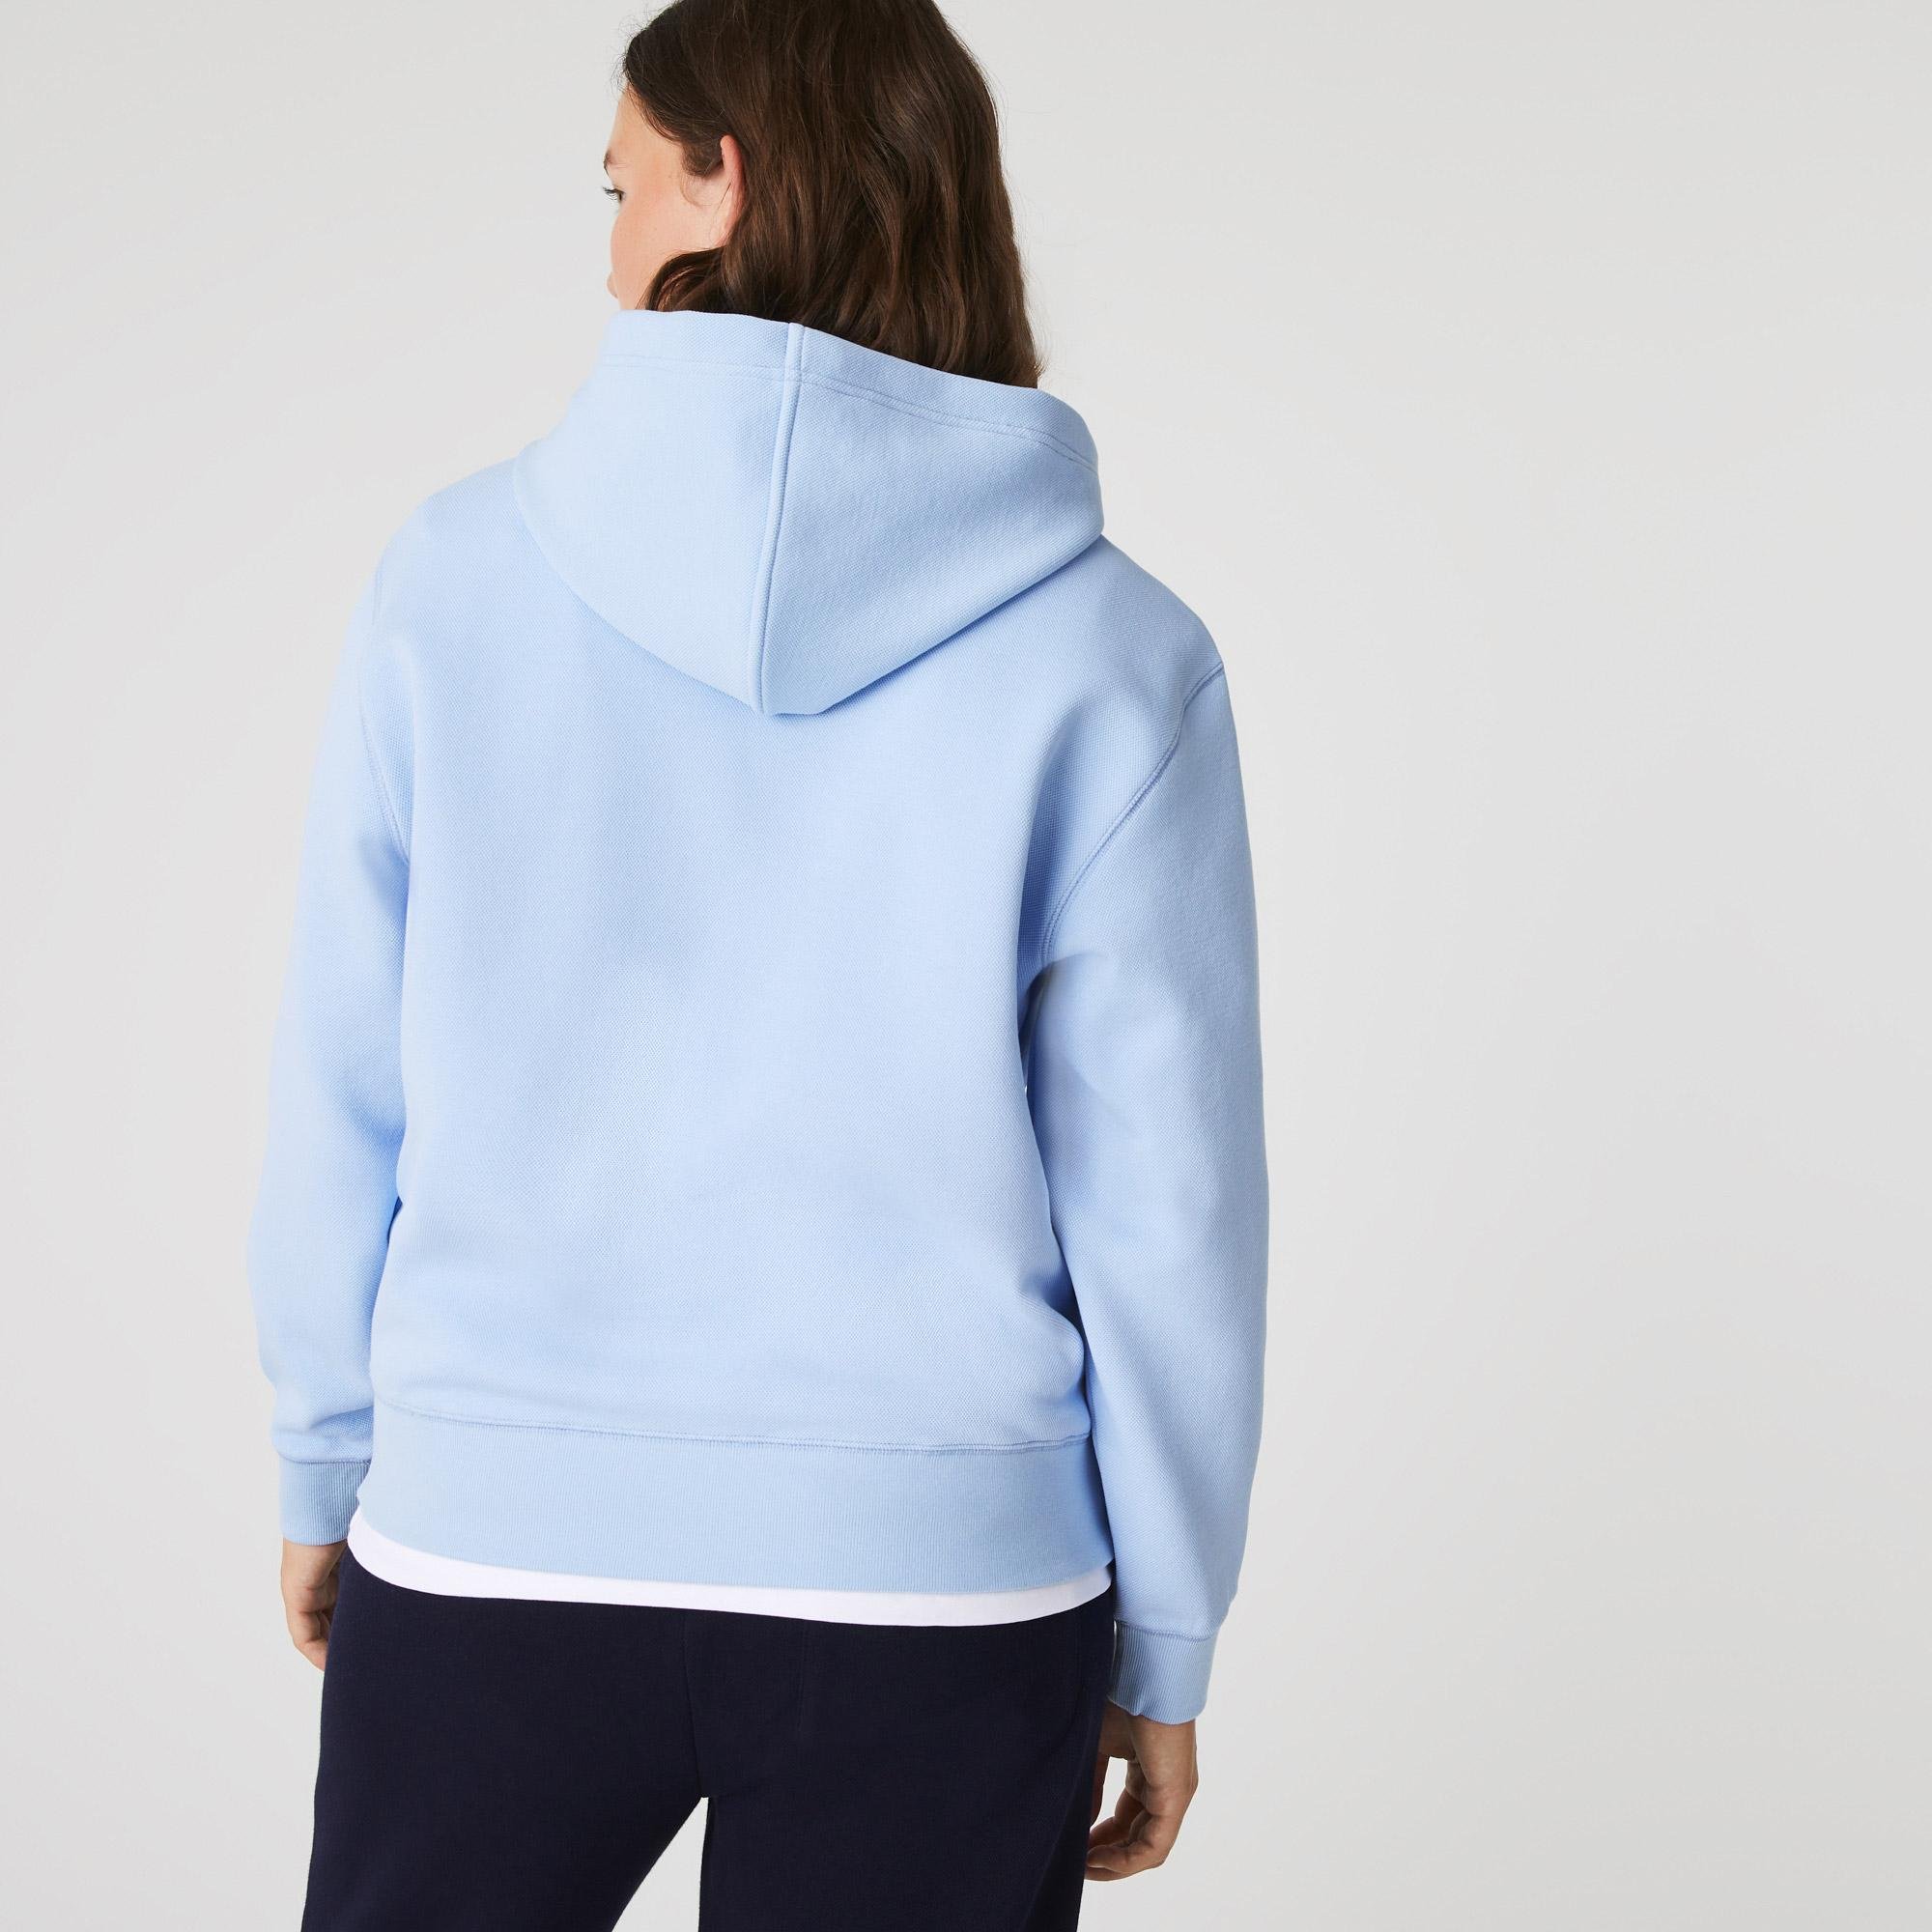 Lacoste Women’s Loose Fit Hooded Cotton Blend Sweatshirt